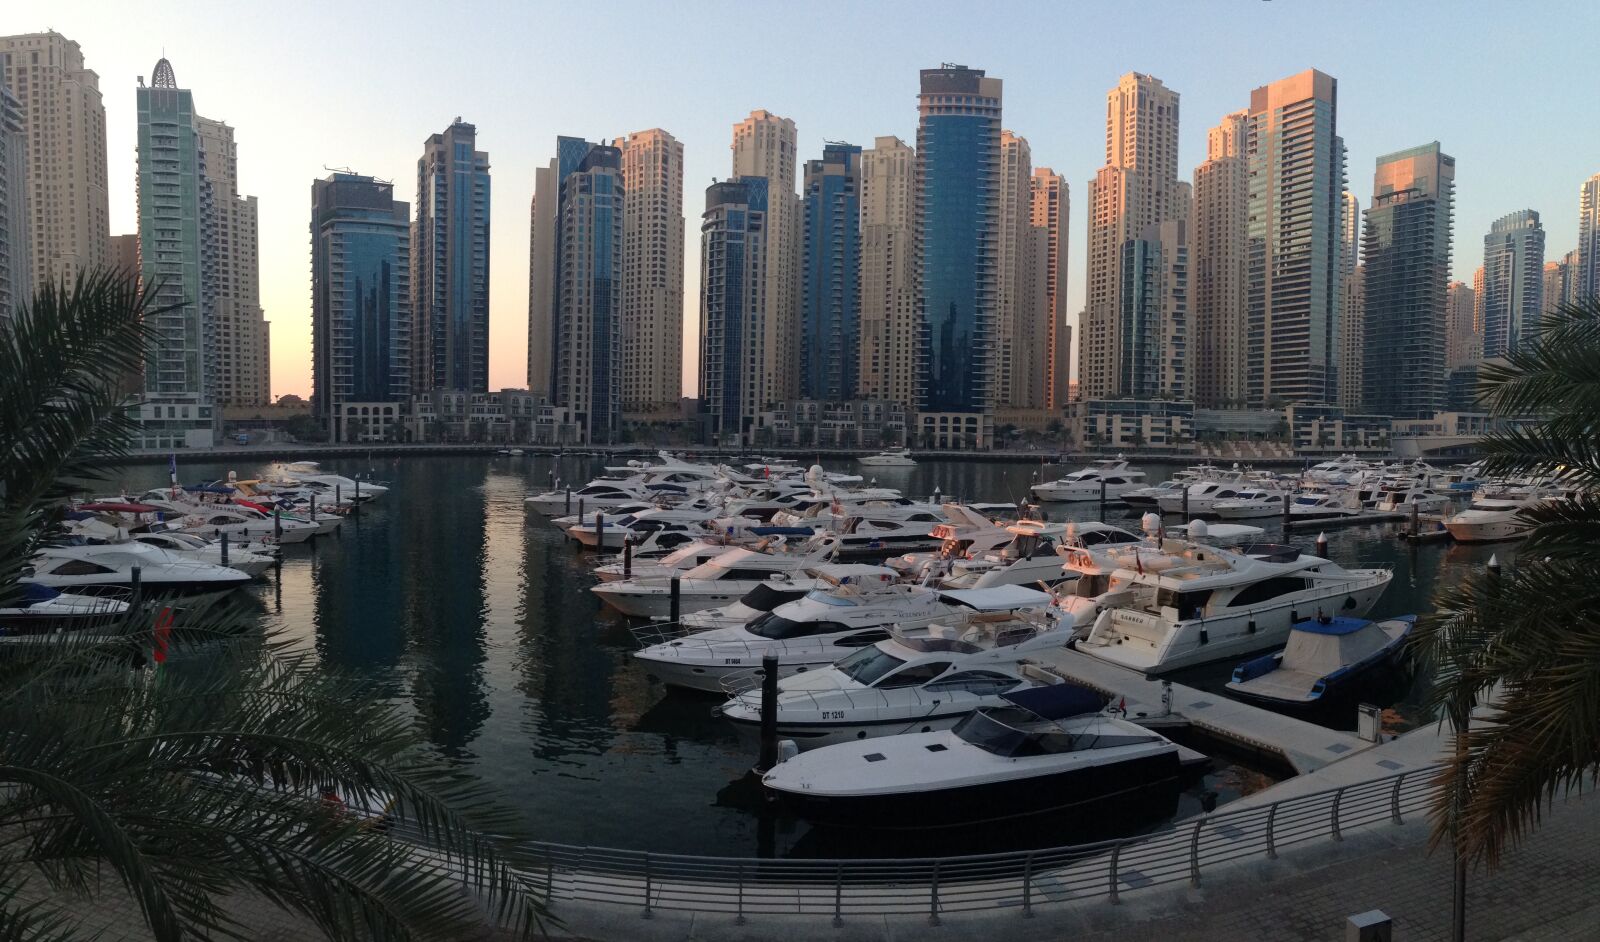 Apple iPhone 5 sample photo. Dubai, uae, boats photography